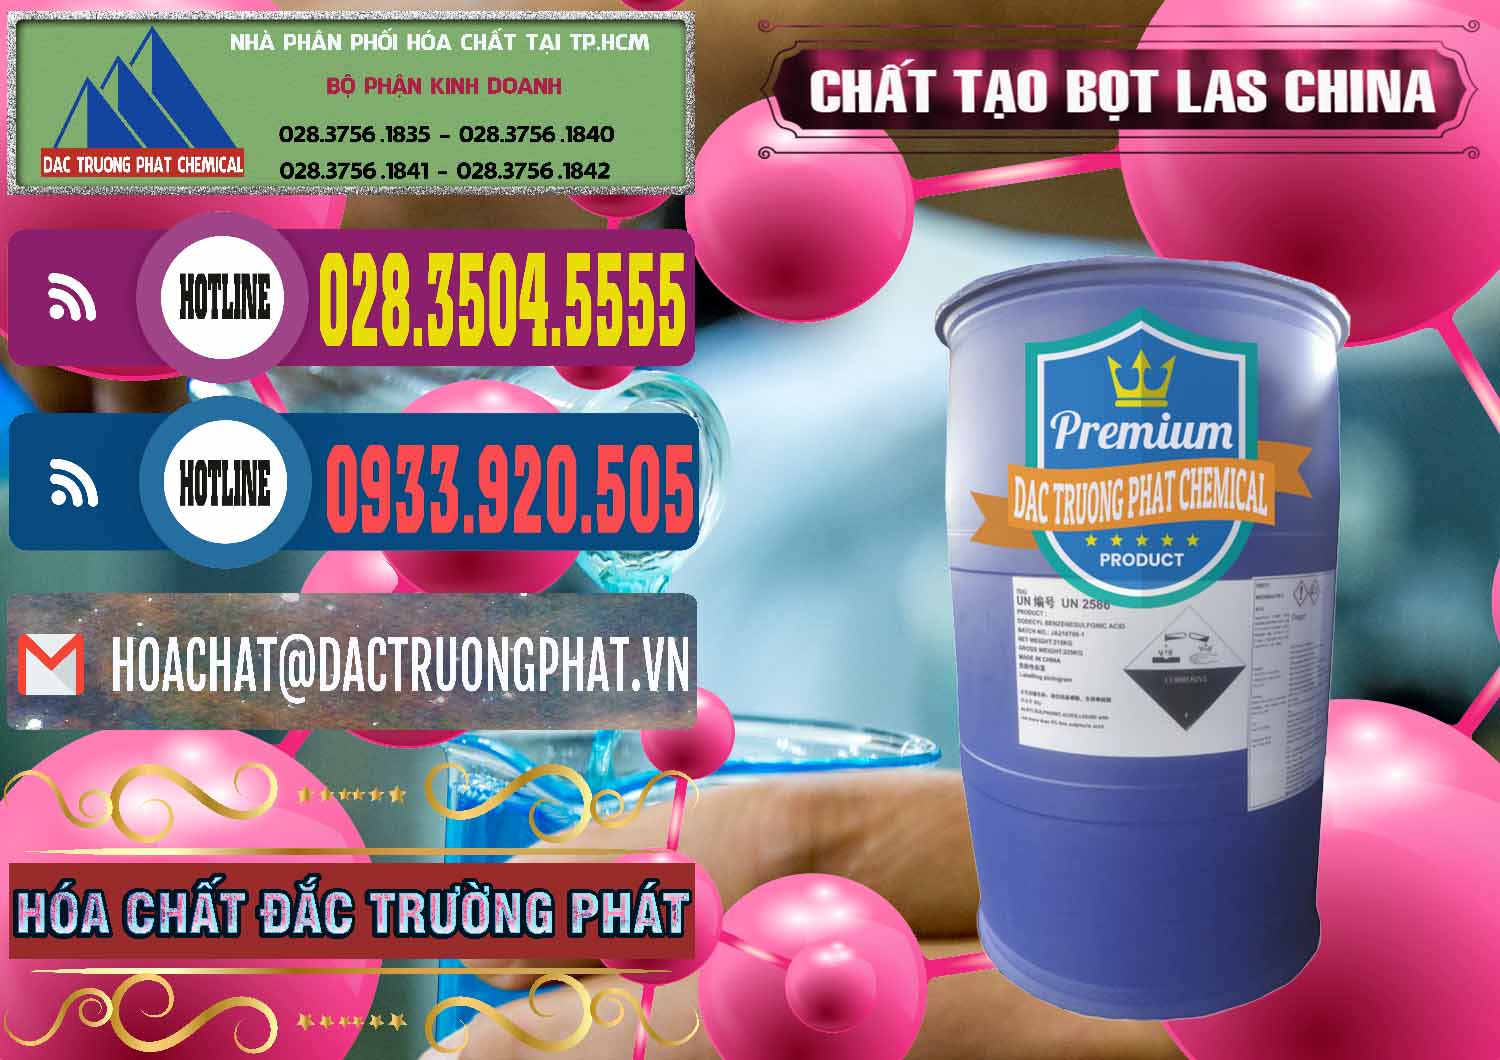 Công ty cung cấp & bán Chất tạo bọt Las Trung Quốc China - 0451 - Cung cấp _ bán hóa chất tại TP.HCM - muabanhoachat.com.vn